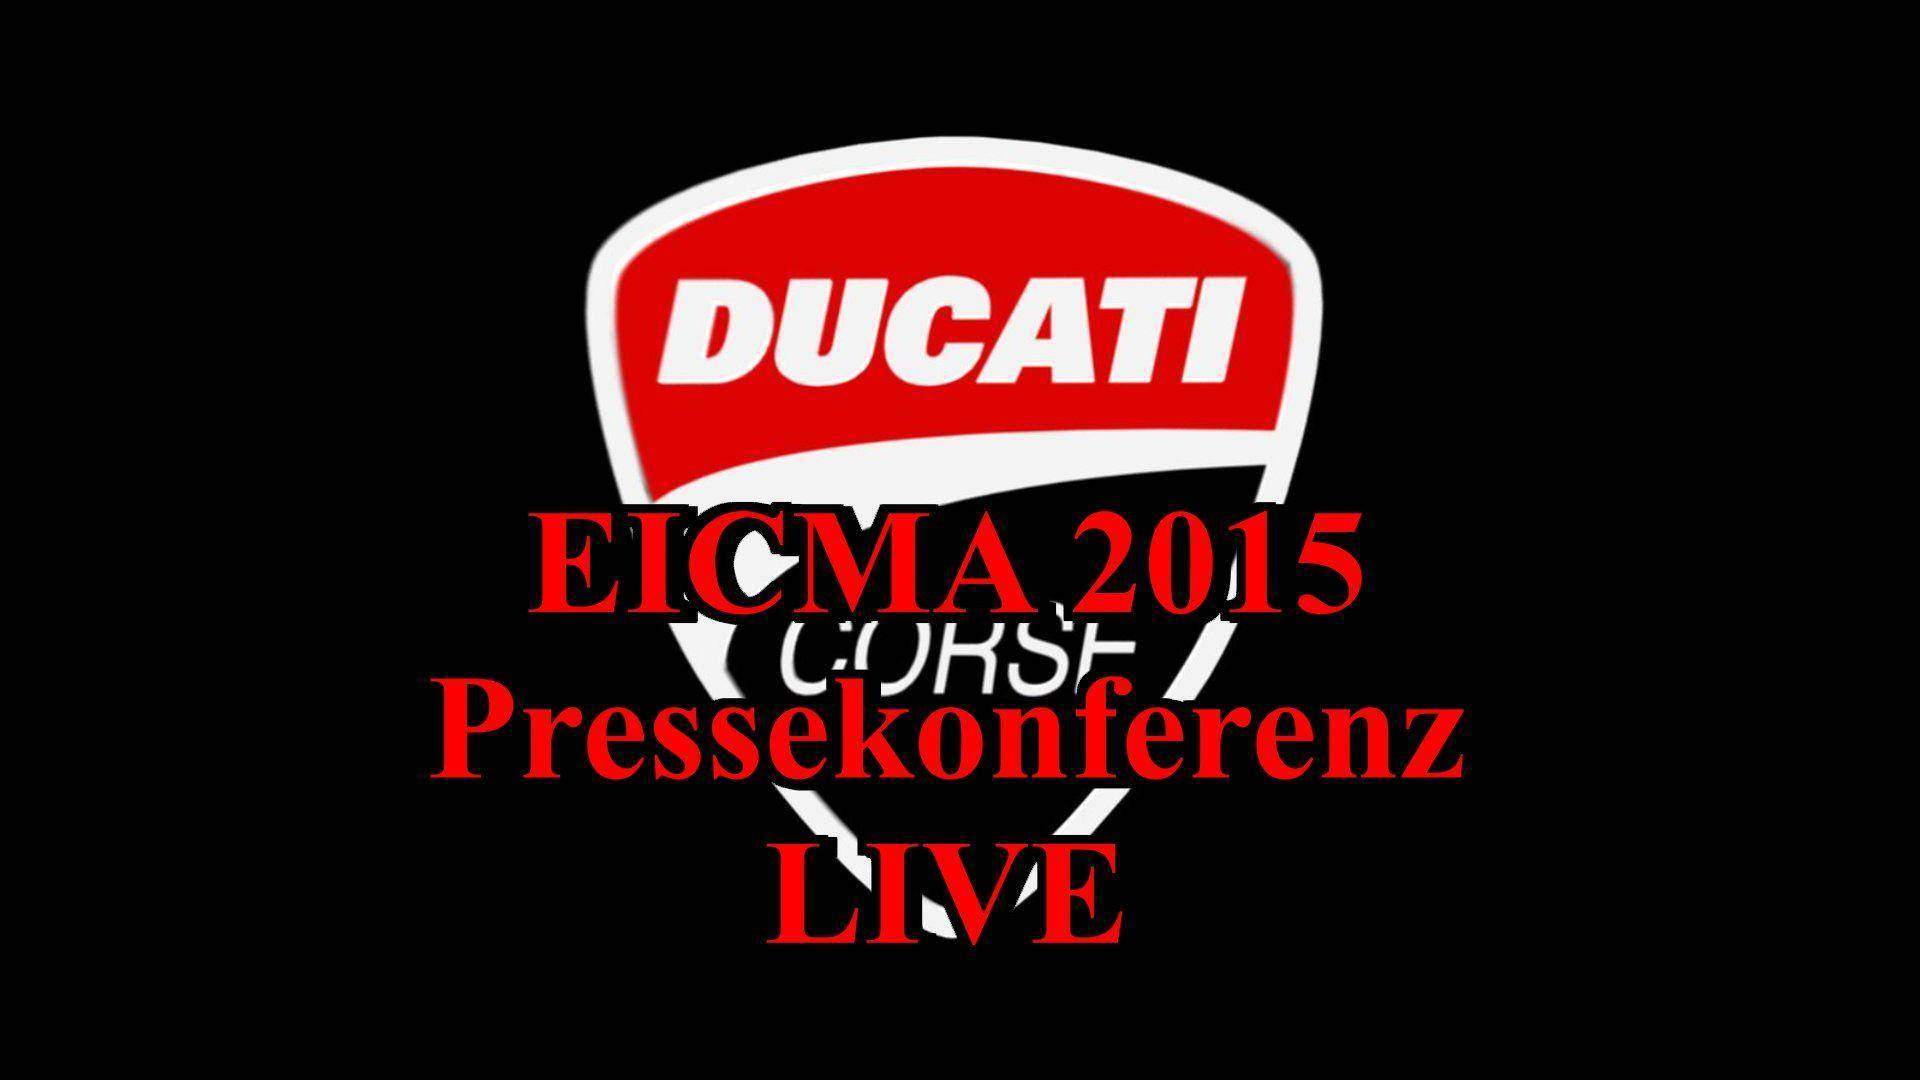 EICMA 2015 Pressekonferenz von Ducati Live 16.11.2015 – ab 16.30 Uhr